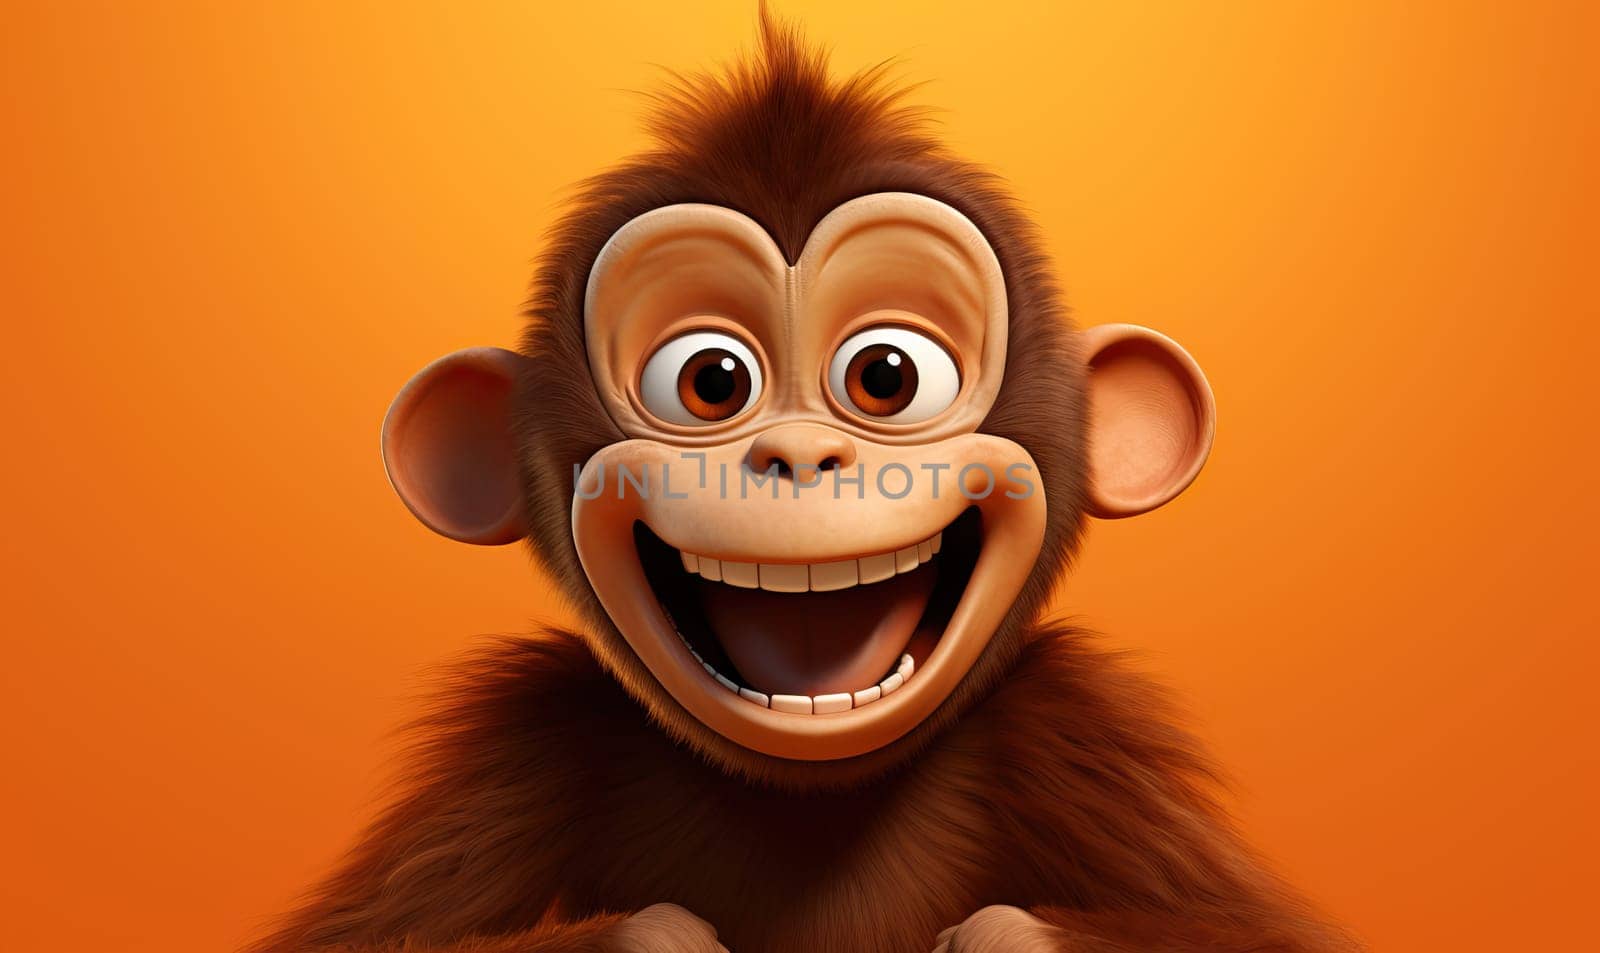 Cartoon animal monkey on an orange background. by Fischeron